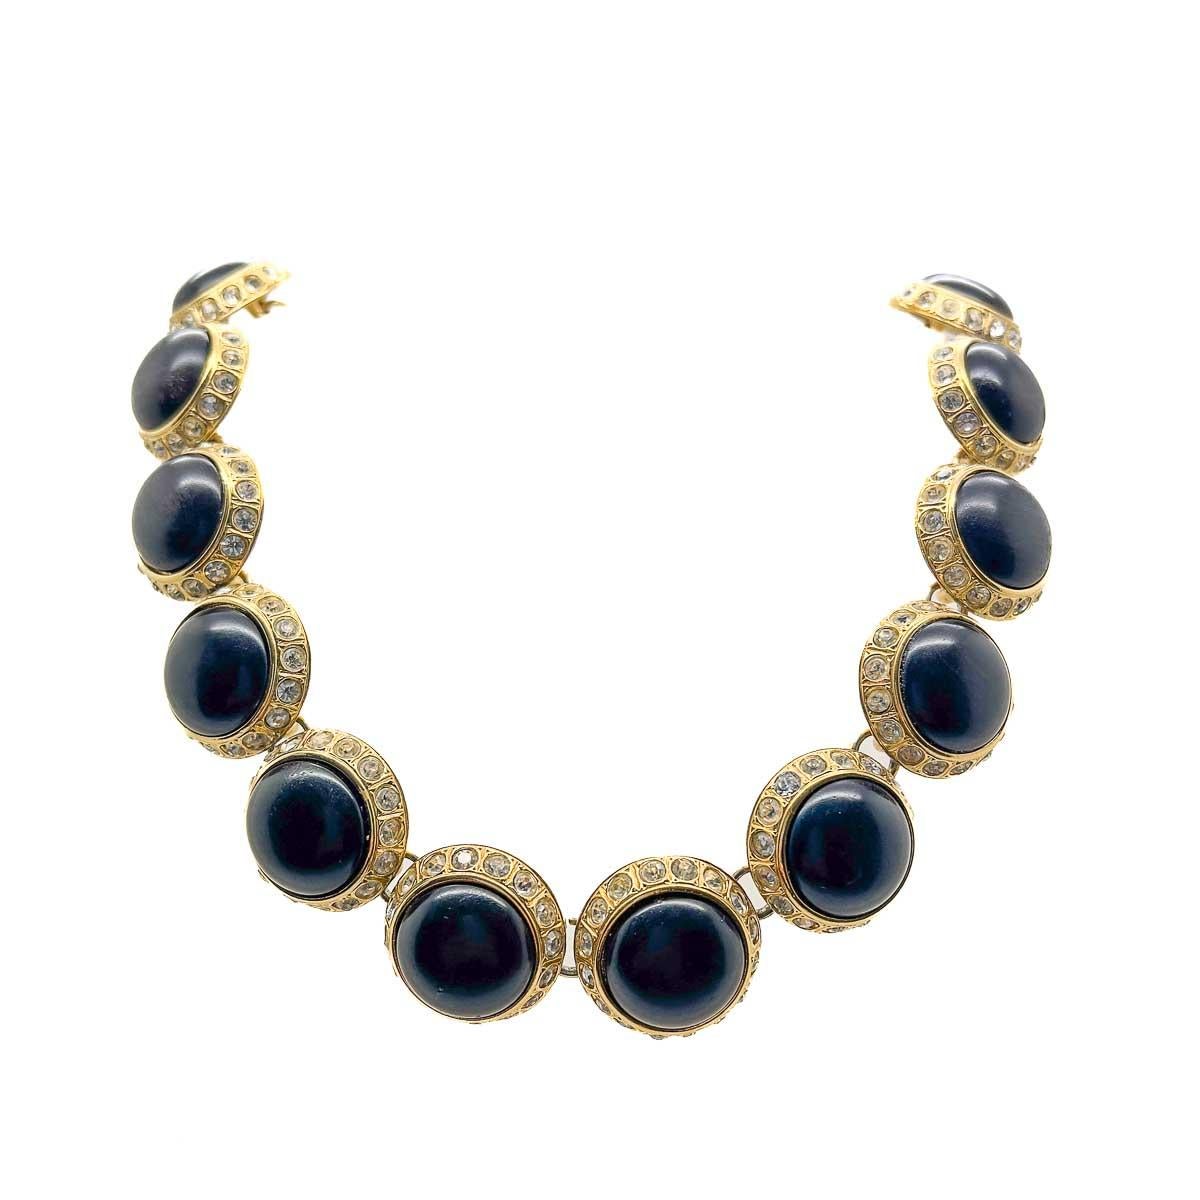 Eine Vintage YSL Cabochon-Halskette. Diese elegante Riviere-Halskette ist mit dramatischen schwarzen Cabochons verziert und mit Chaton-Kristallen akzentuiert, die für einen glamourösen Auftritt sorgen. Ein absolut zeitloses Design aus dem kultigen